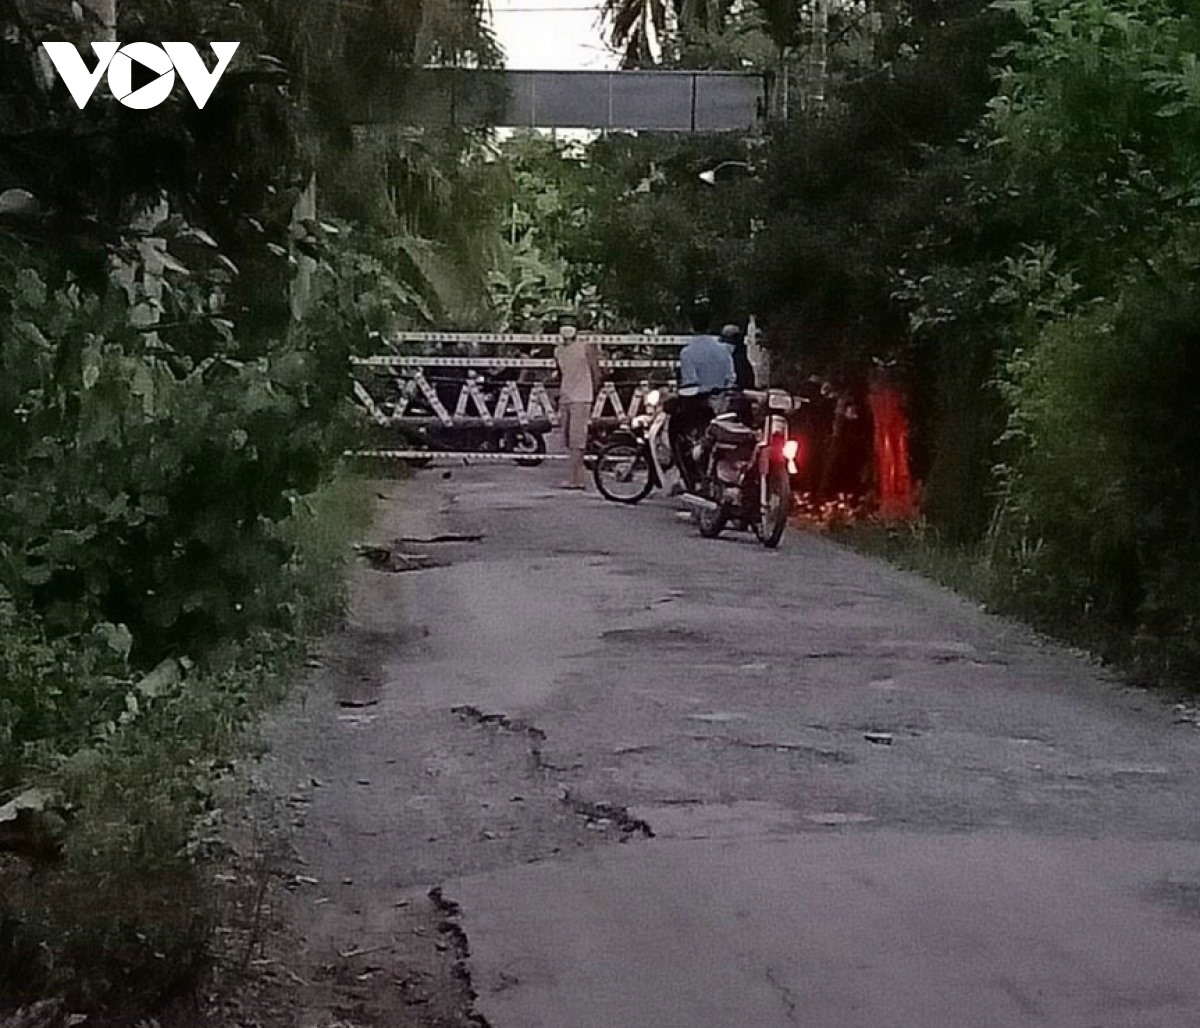 Ngay sau phát hiện 1 ca F0, UBND xã Vĩnh Kim tổ chức rào chắn 1 tuyến đường ở ấp Vĩnh Quý ngay trong đêm